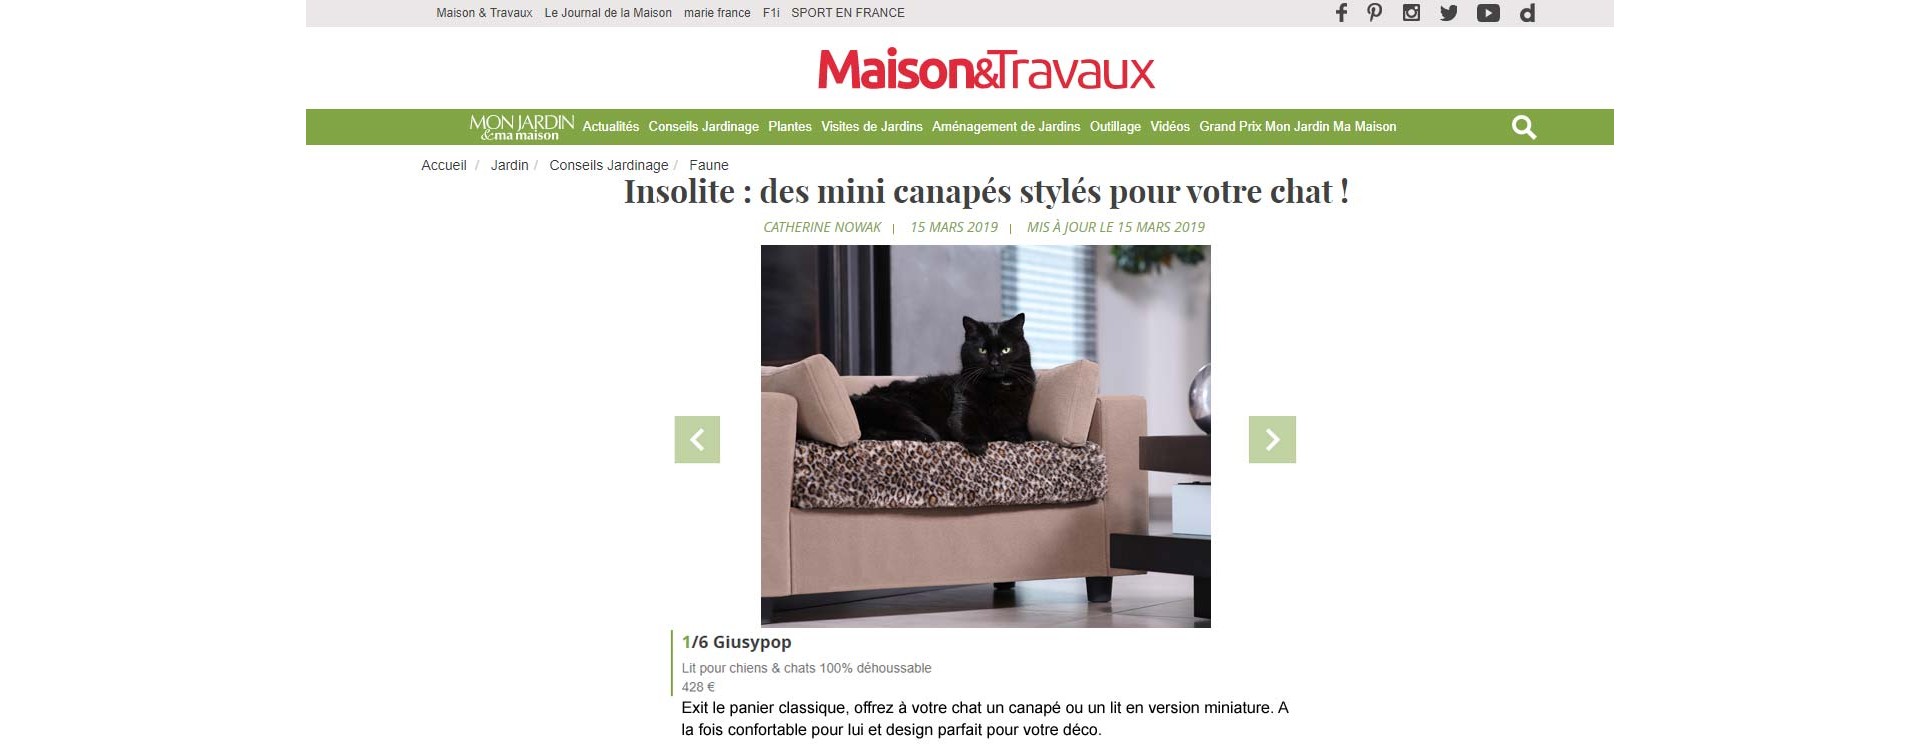 Maison & Travaux parle de Giusypop - Insolite : des mini canapés stylés pour votre chat !